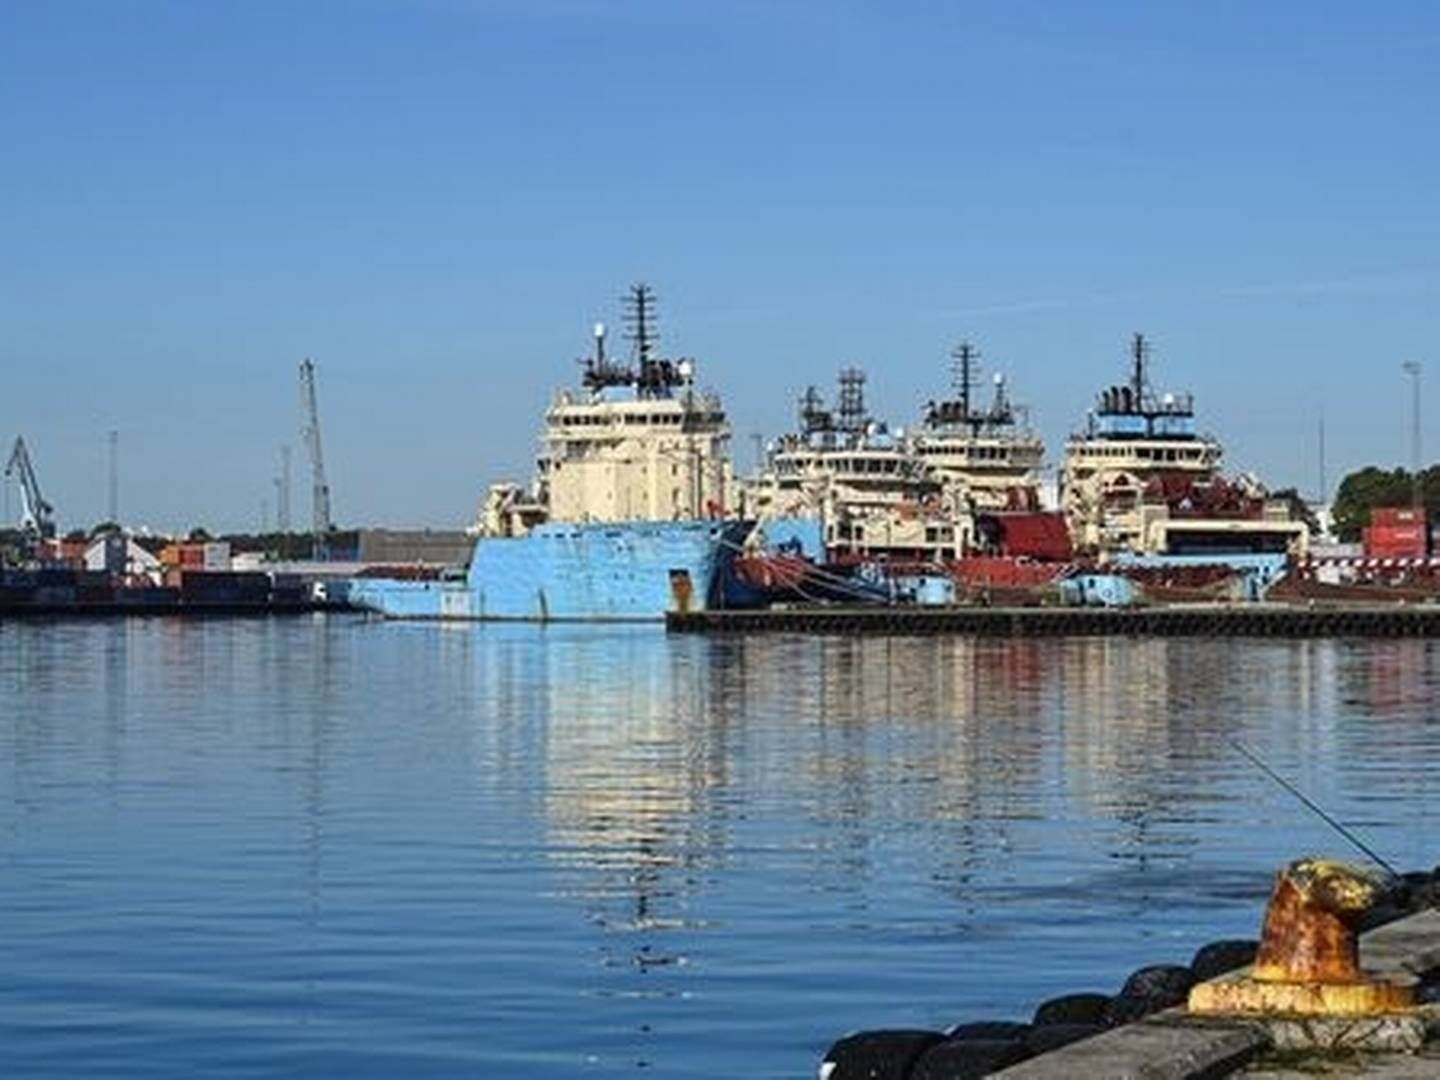 Fredericia Havn står til at huse demonstrationsanlæg til rensning af olieholdigt vand, såfremt den bliver godkendt af Miljøstyrelsen. | Foto: Pr / Trafikstyrelsen